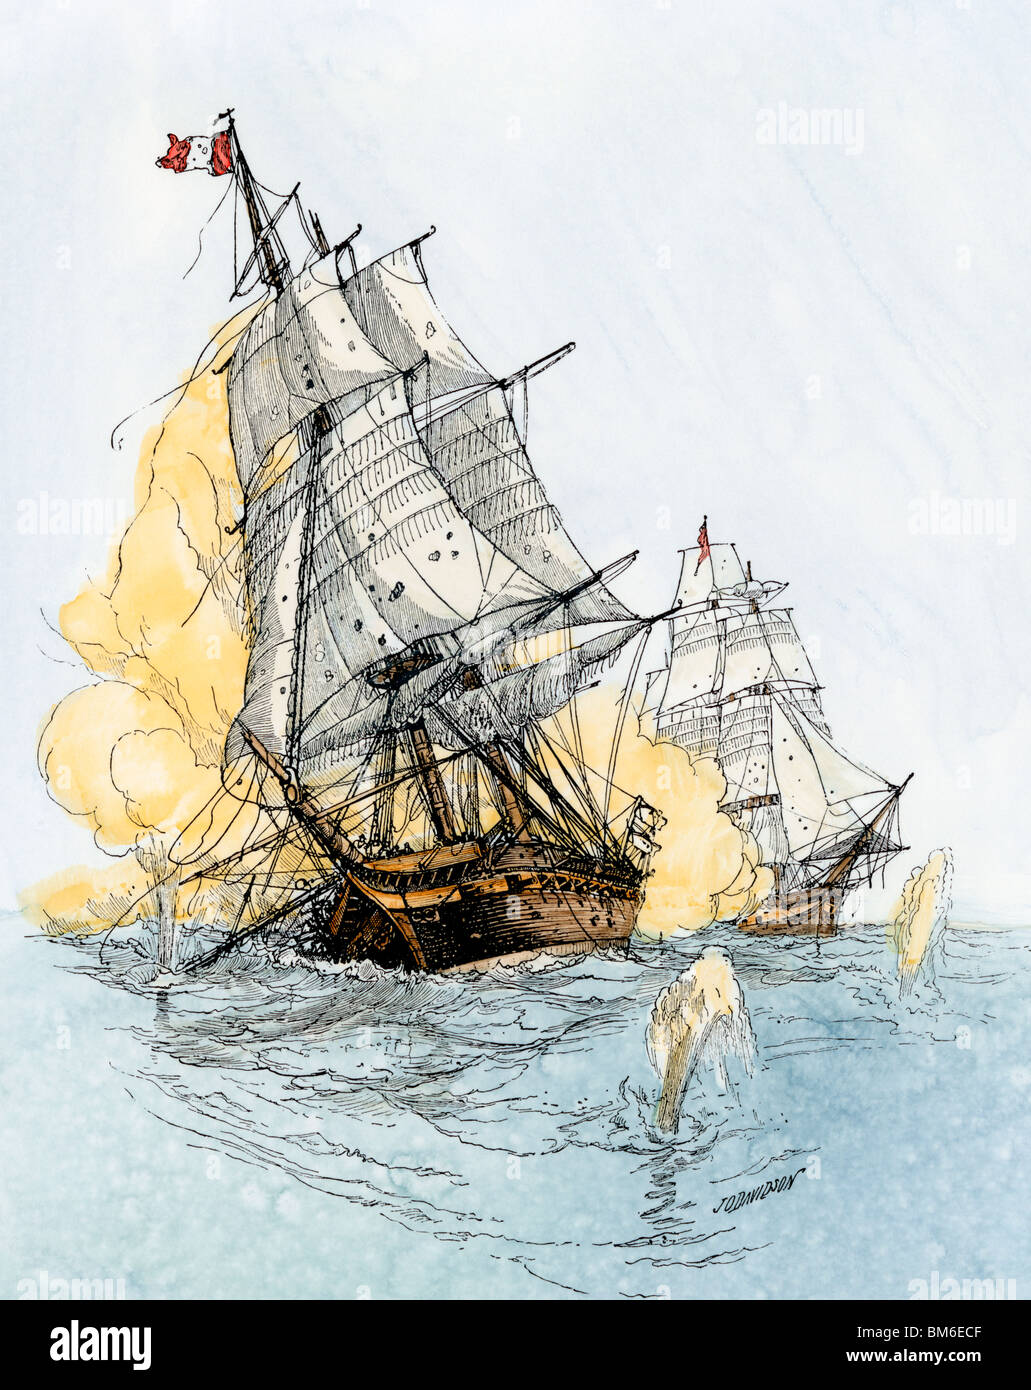 Buque norteamericano "Boston" disparando sobre "Le Berceau" en la guerra naval no declarada con Francia, 1800. Xilografía coloreada a mano Foto de stock